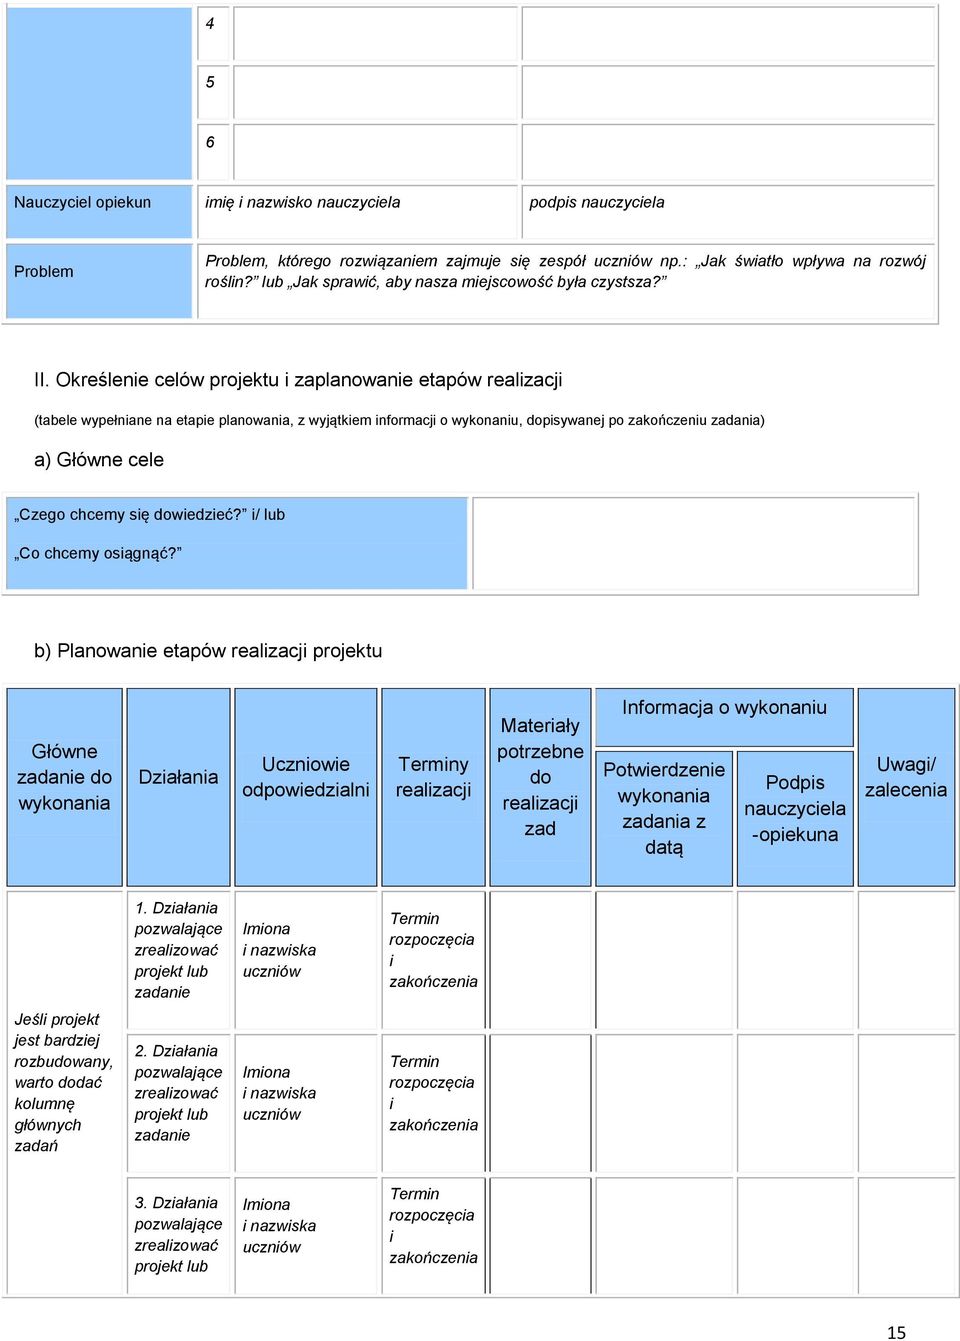 Określenie celów projektu i zaplanowanie etapów realizacji (tabele wypełniane na etapie planowania, z wyjątkiem informacji o wykonaniu, dopisywanej po zakończeniu zadania) a) Główne cele Czego chcemy